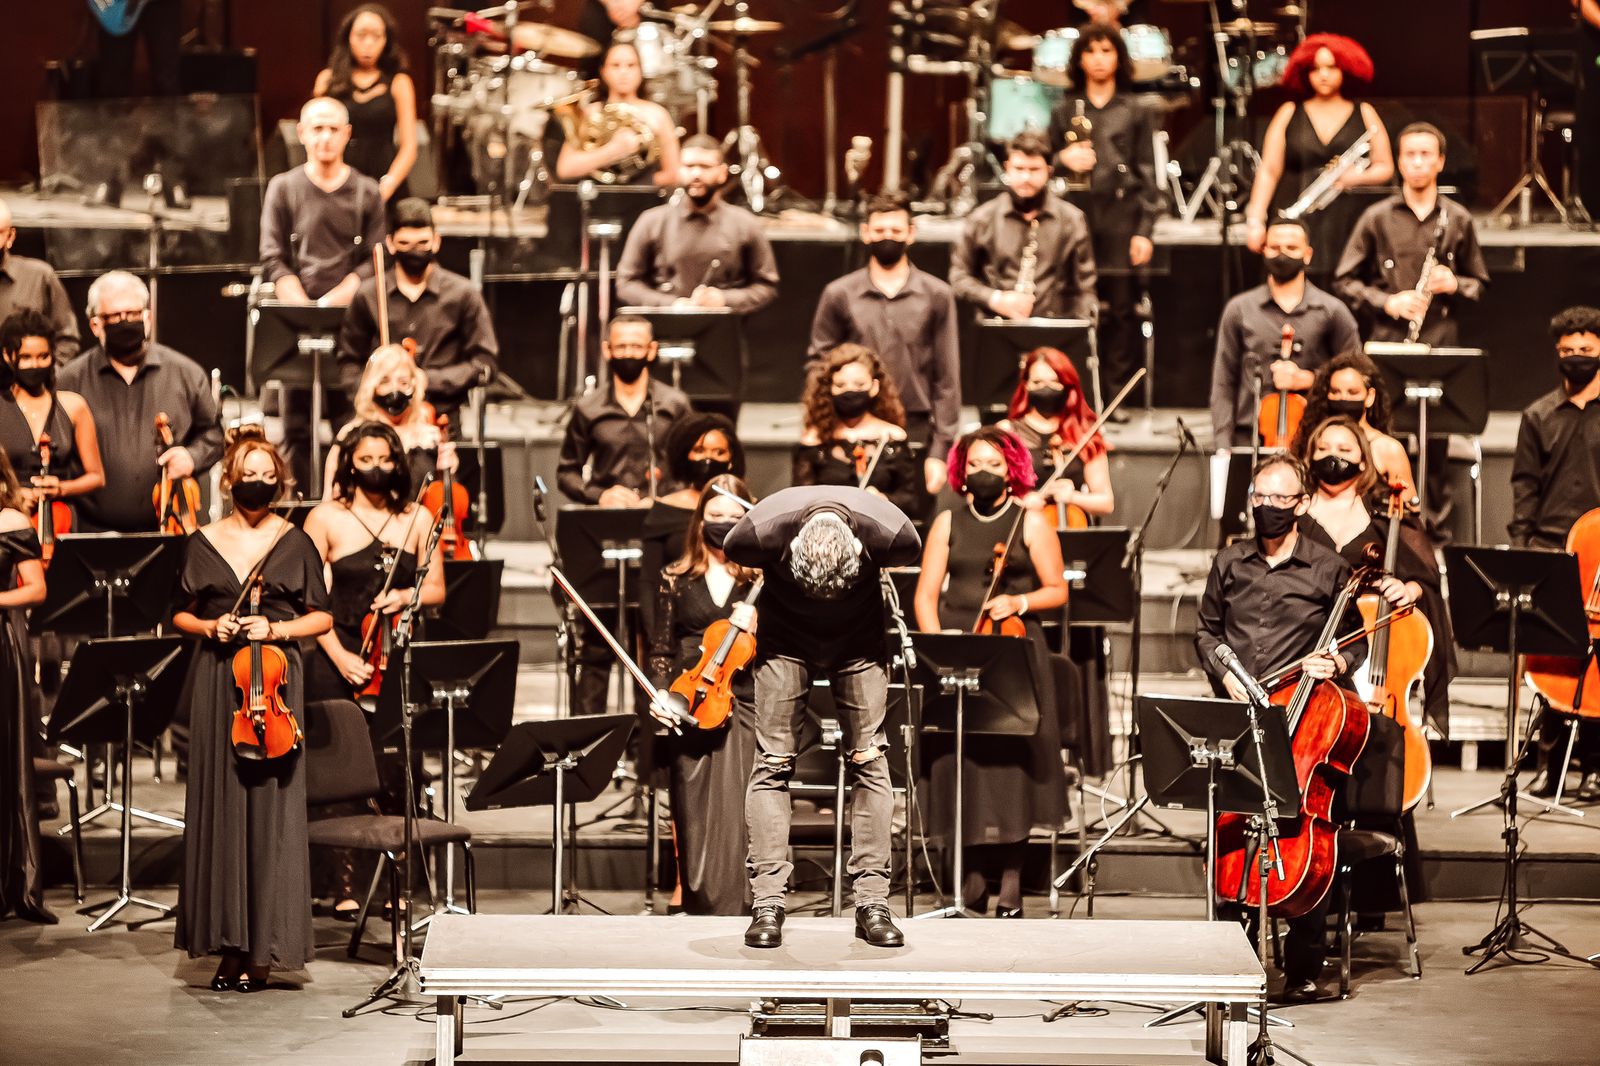 Toda orquestra de máscara, em cima do palco, segura seus instrumentos. O maestro se curva em agradecimento ao público que não aparece na imagem.